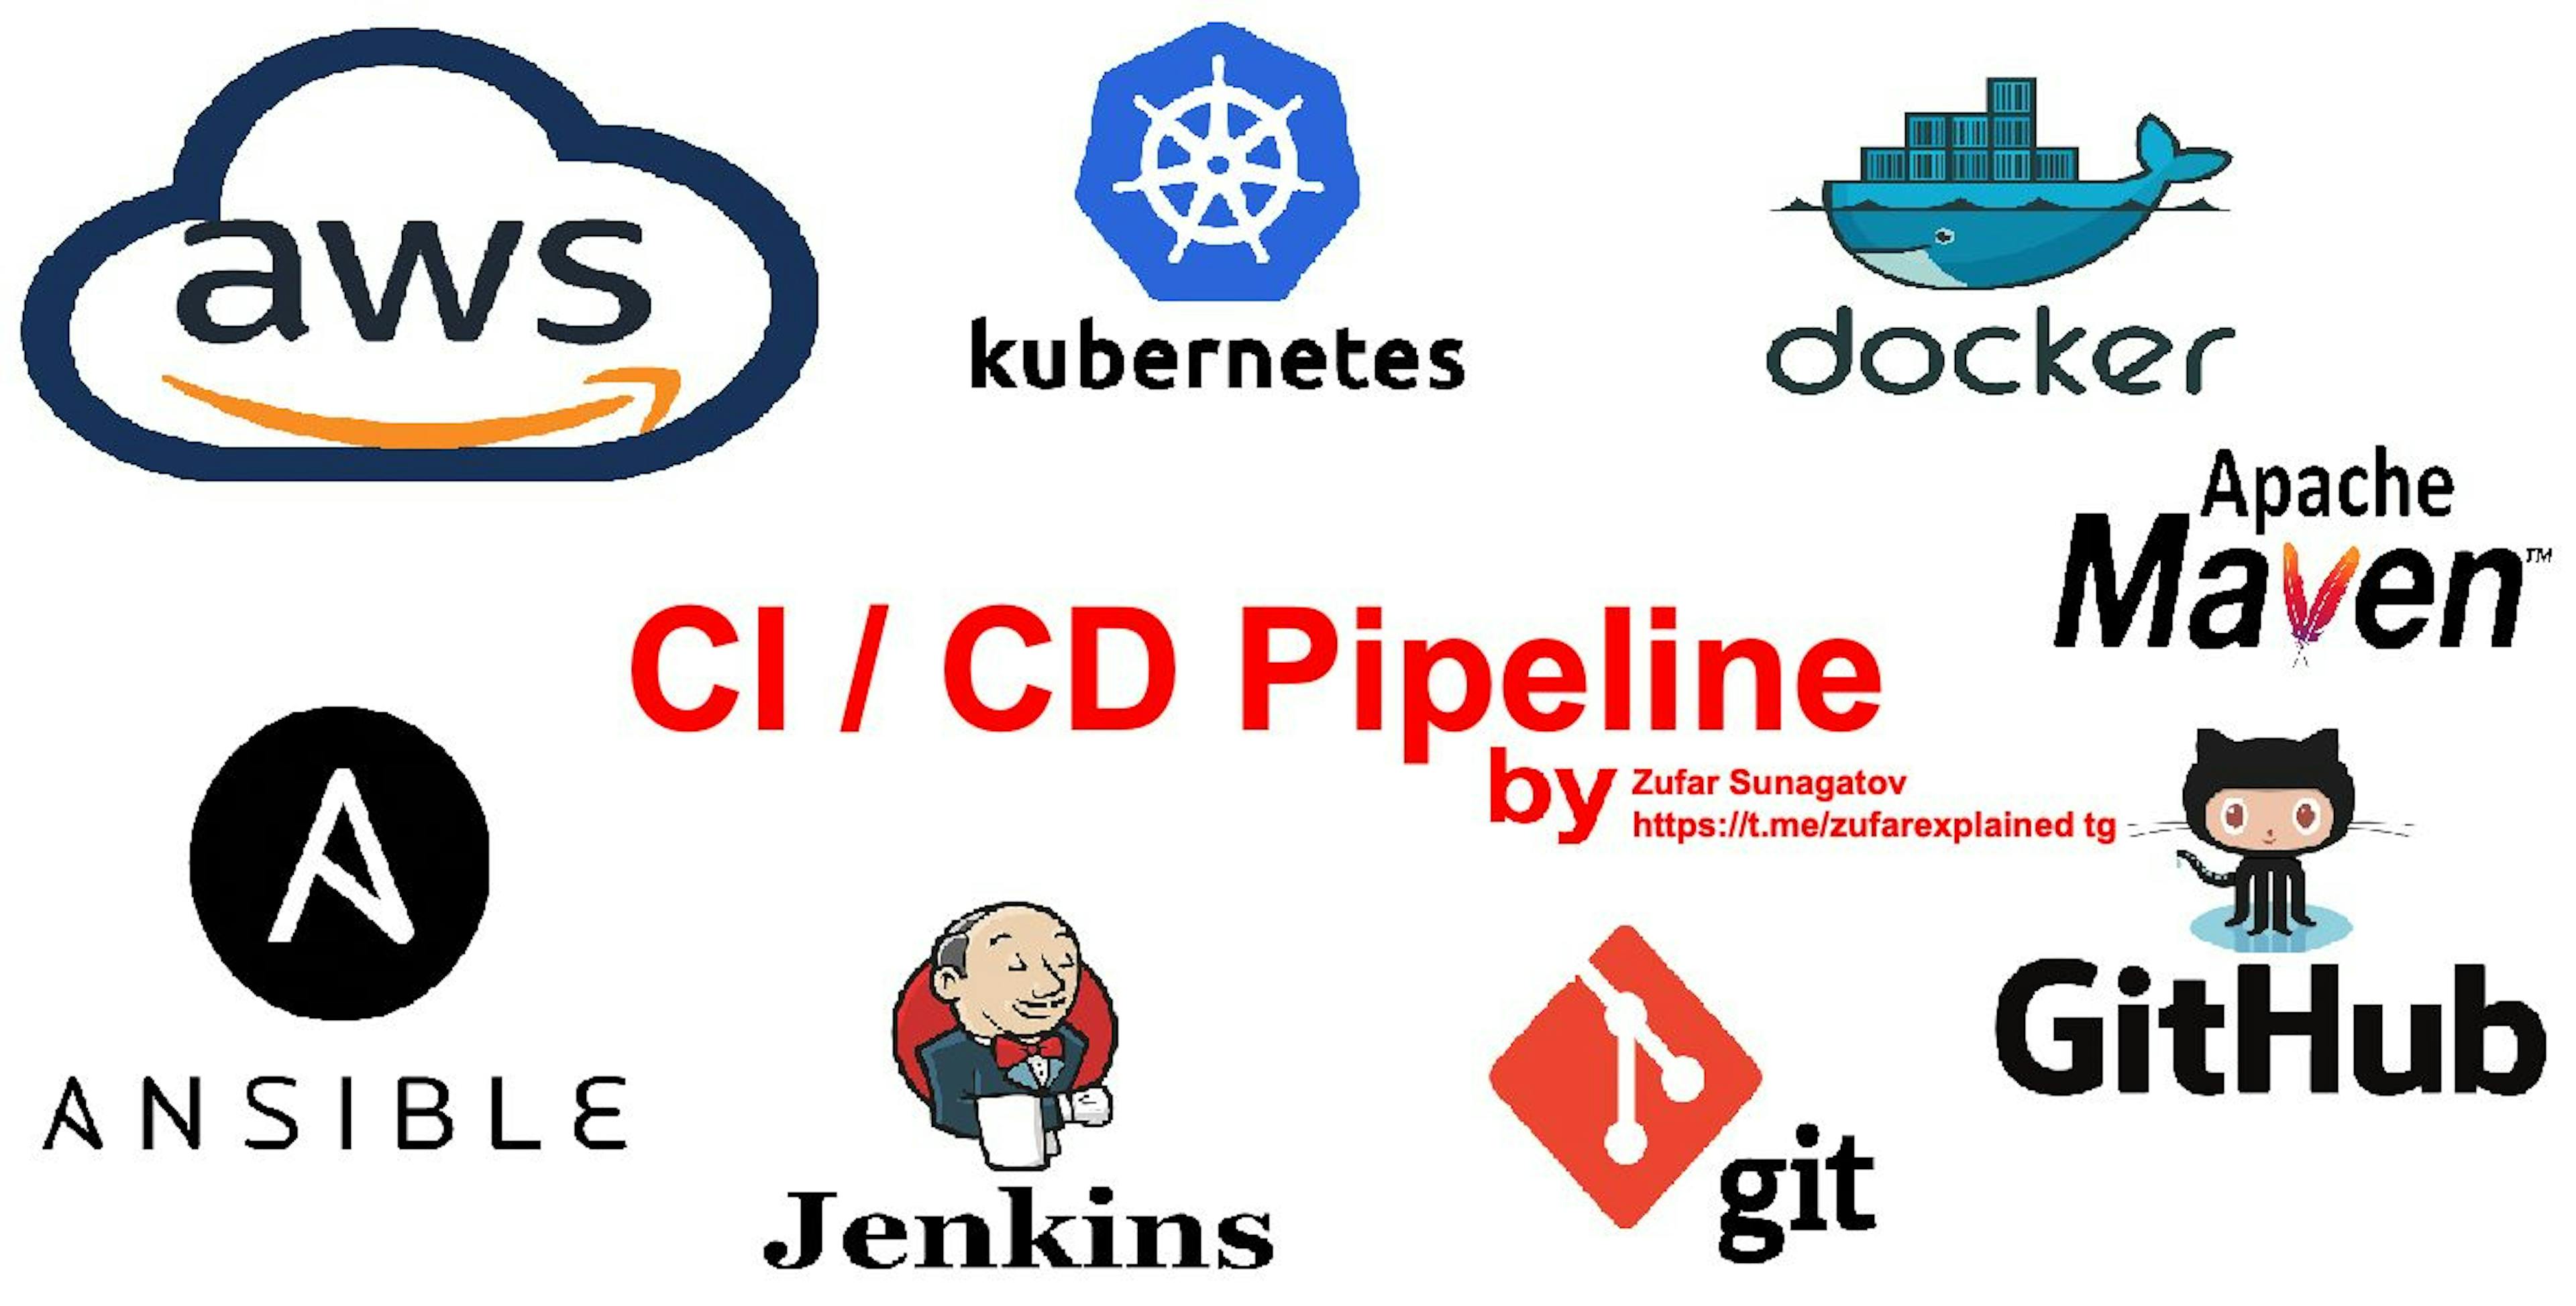 featured image - Creación de una canalización de CI/CD con AWS, K8S, Docker, Ansible, Git, Github, Apache Maven y Jenkins